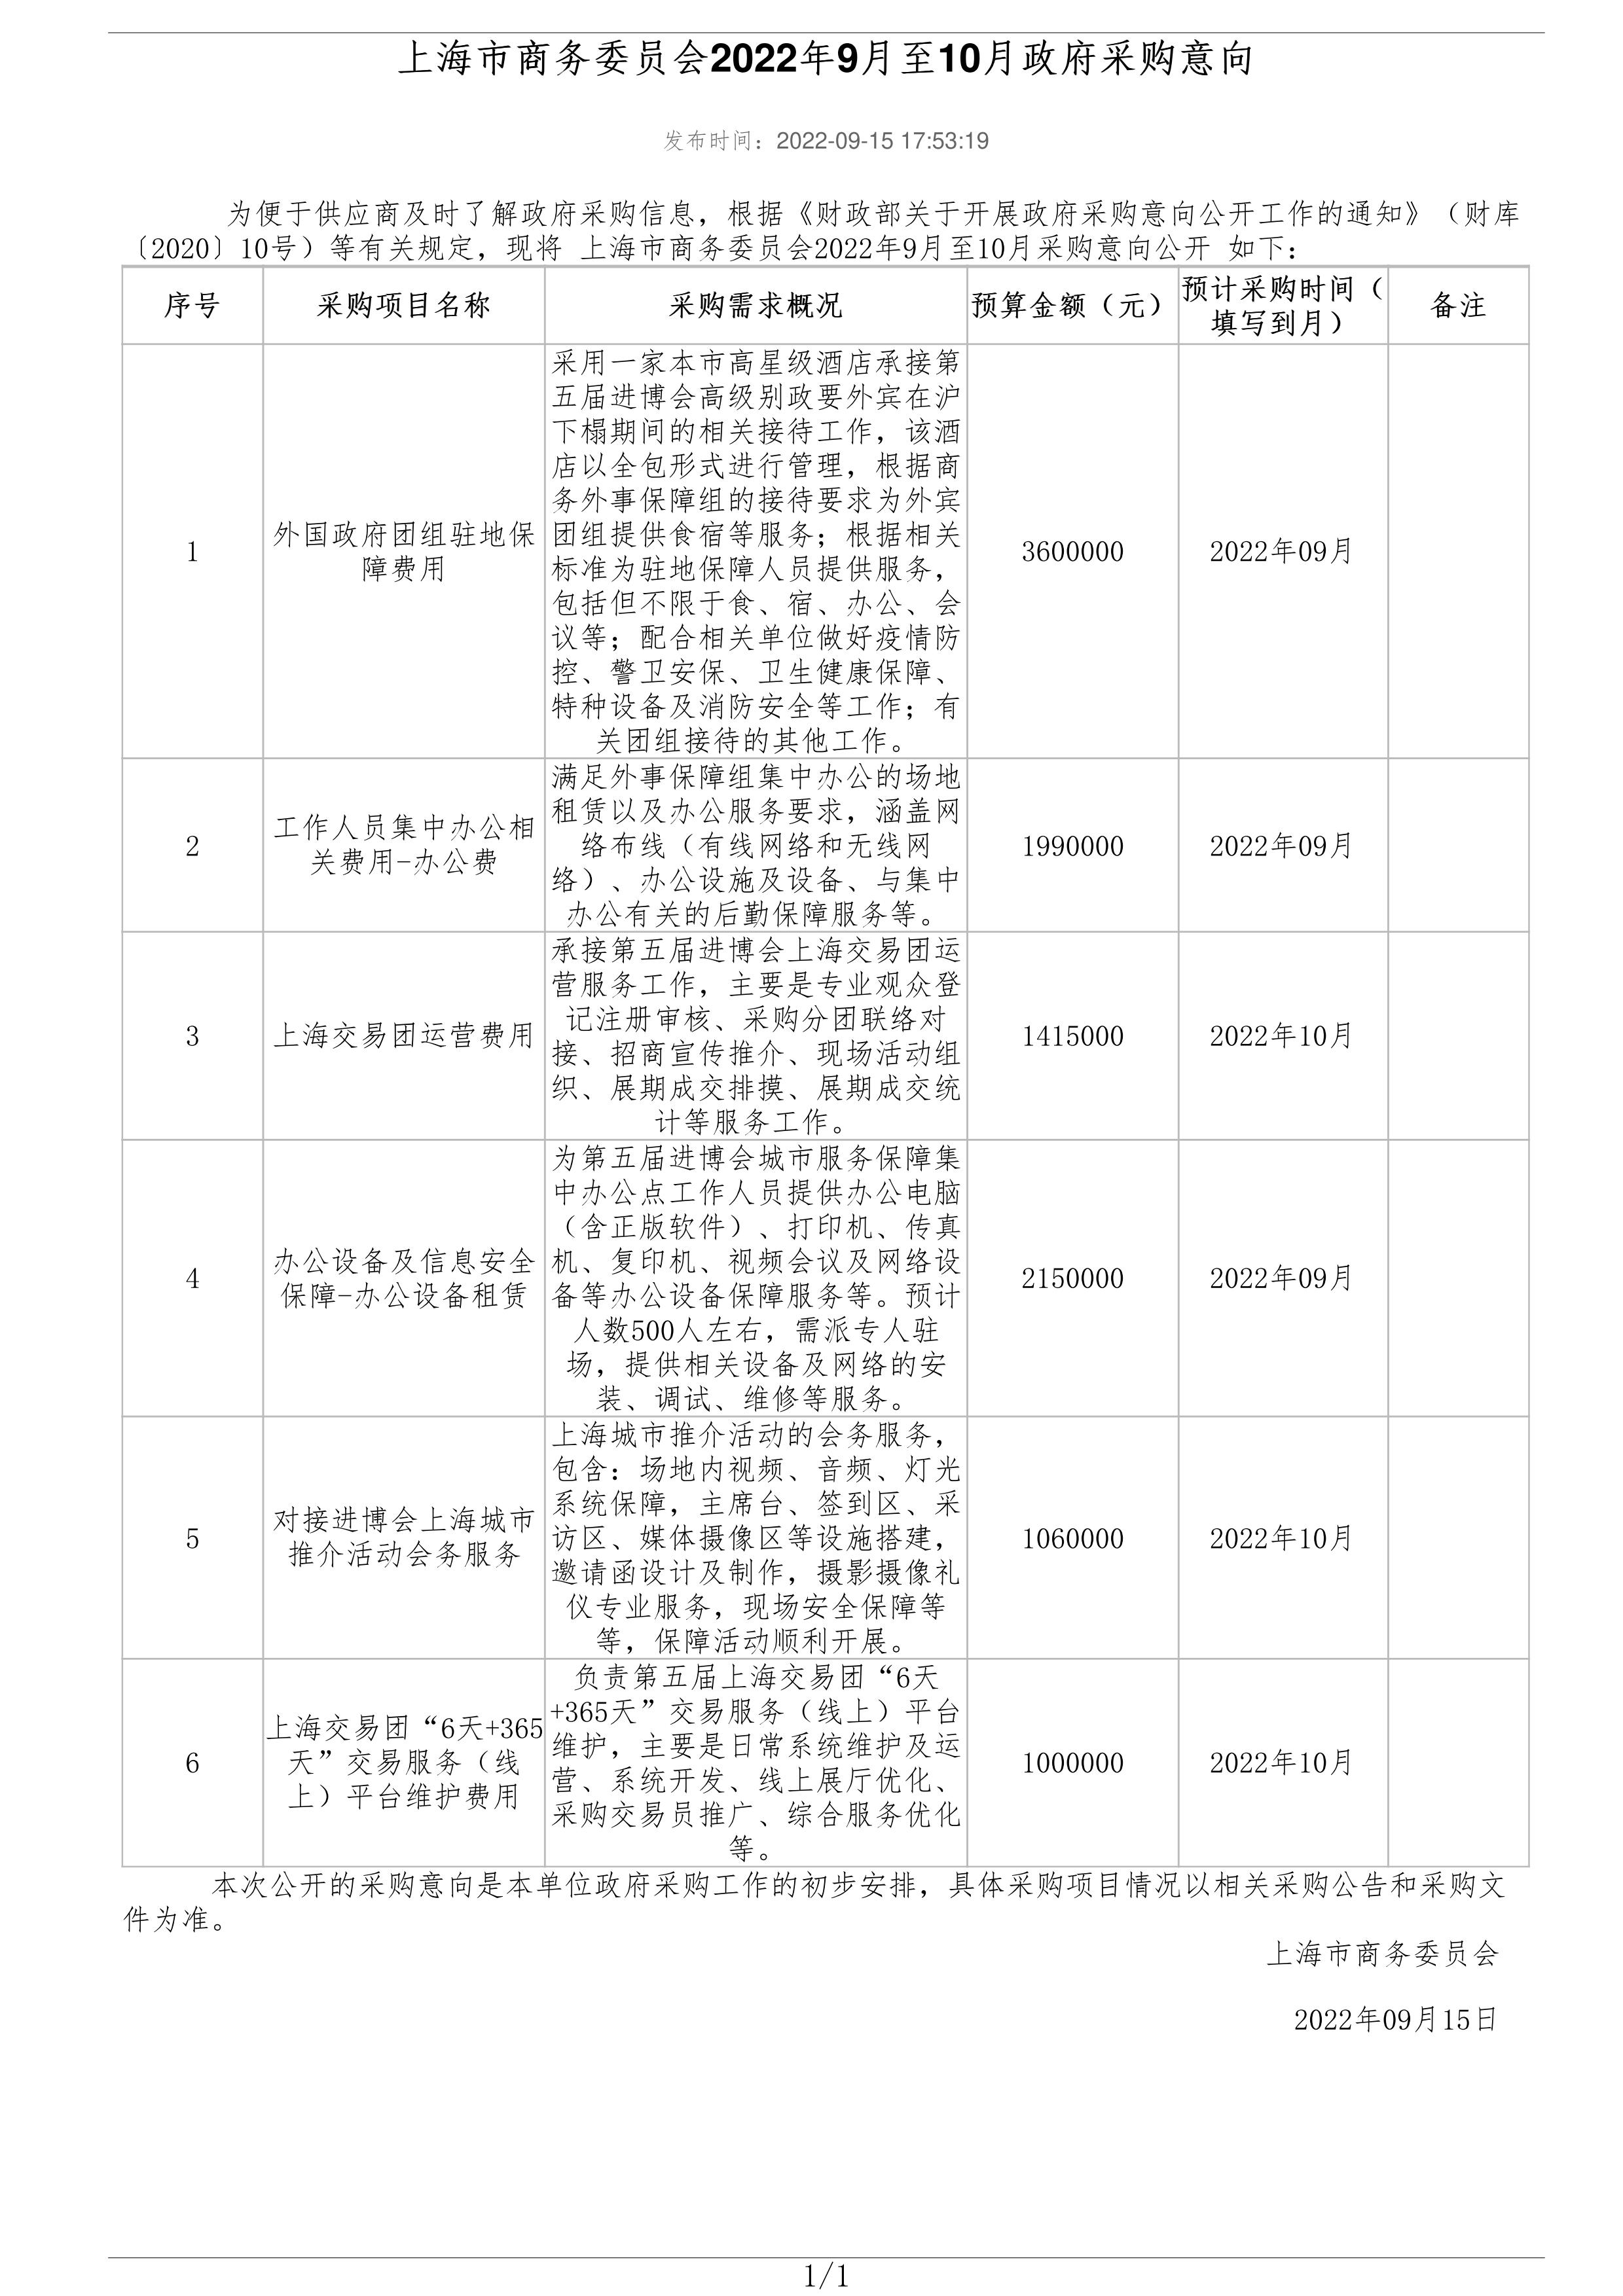 上海市商务委员会2022年9月至10月政府采购意向_01.jpg